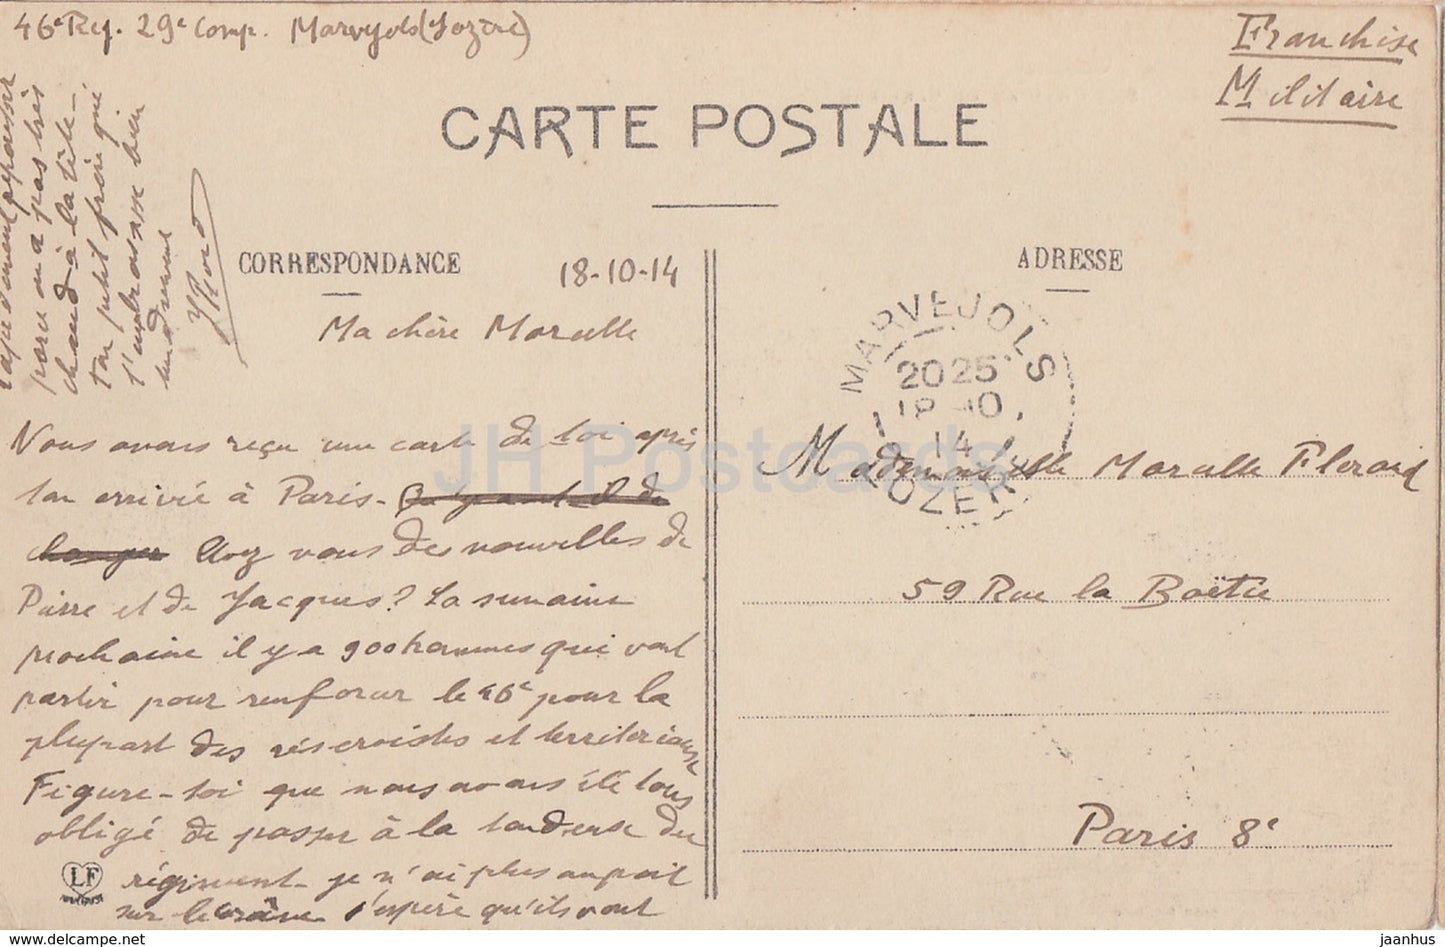 La Lozere - Marvejols - Chateau de Carriere - castle - 609 - old postcard - 1914 - France - used